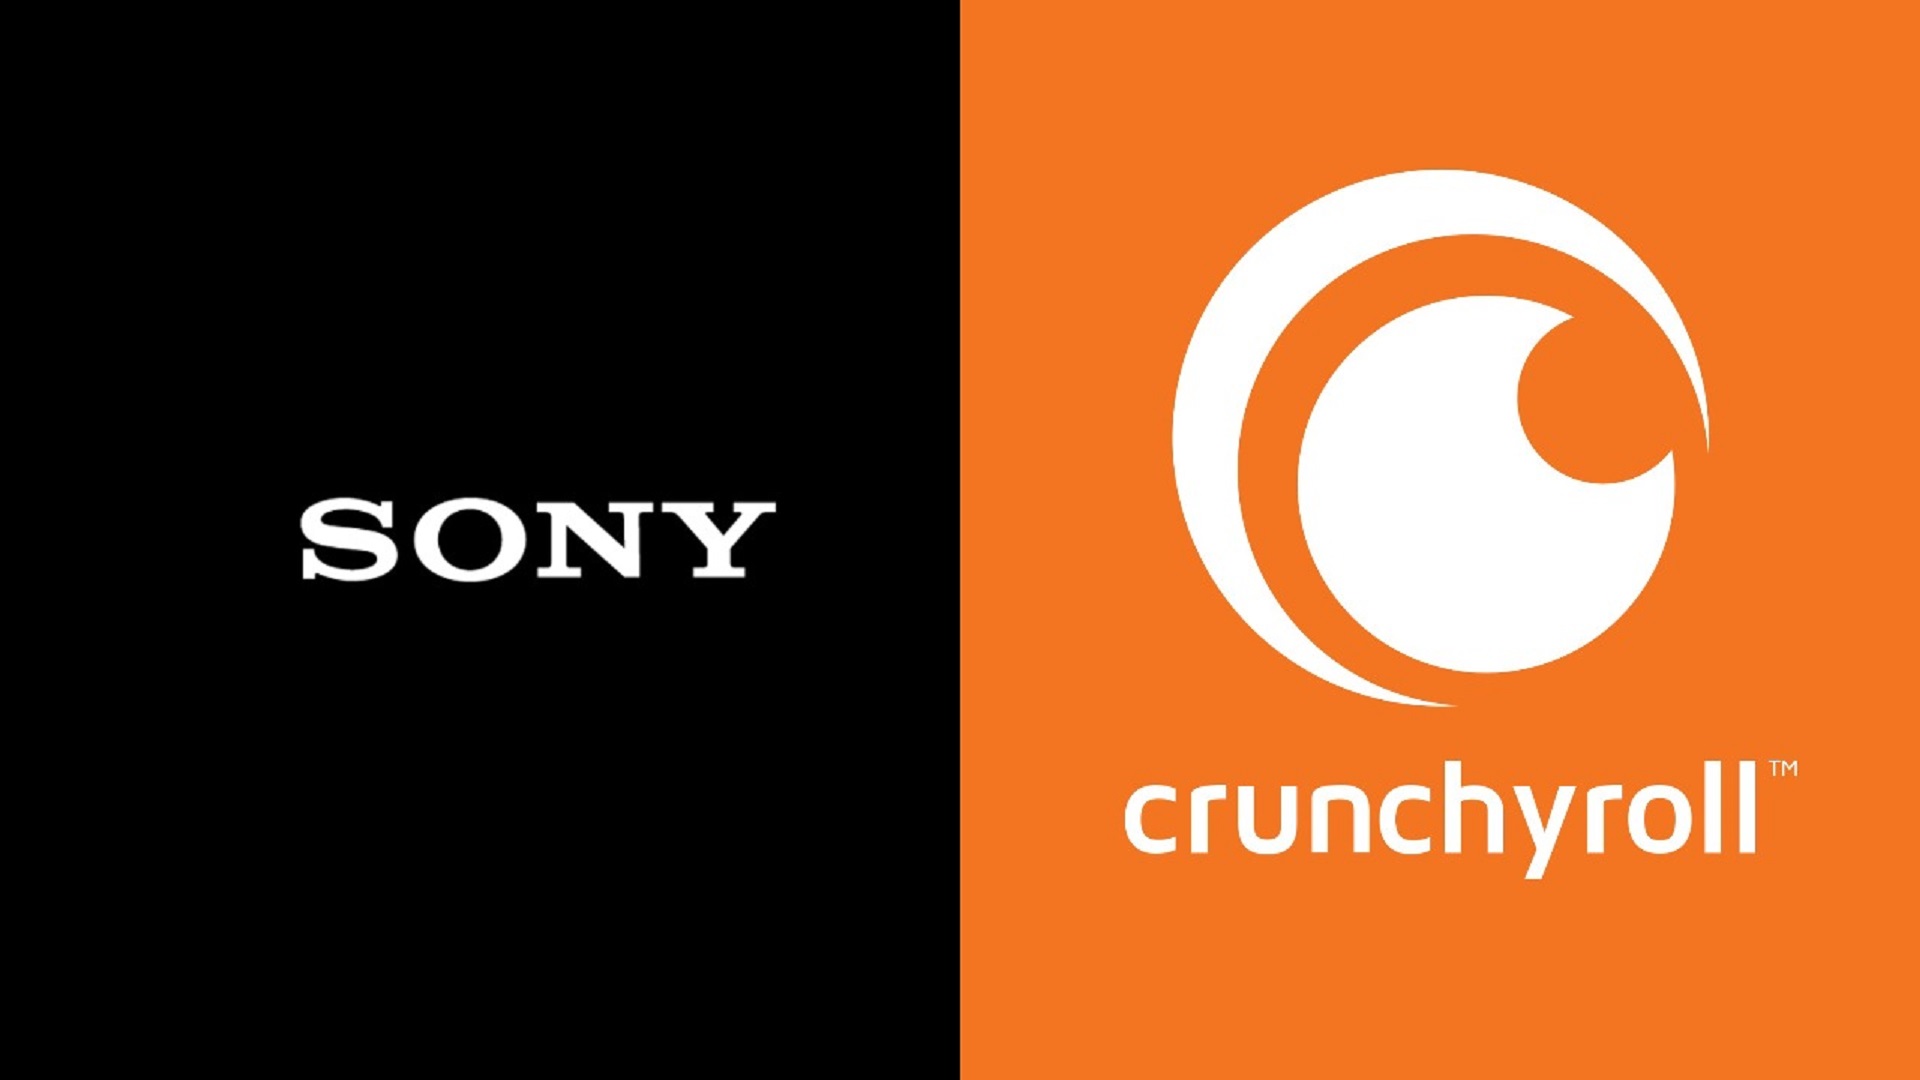 سونی خرید کمپانی Crunchyroll را نهایی کرد